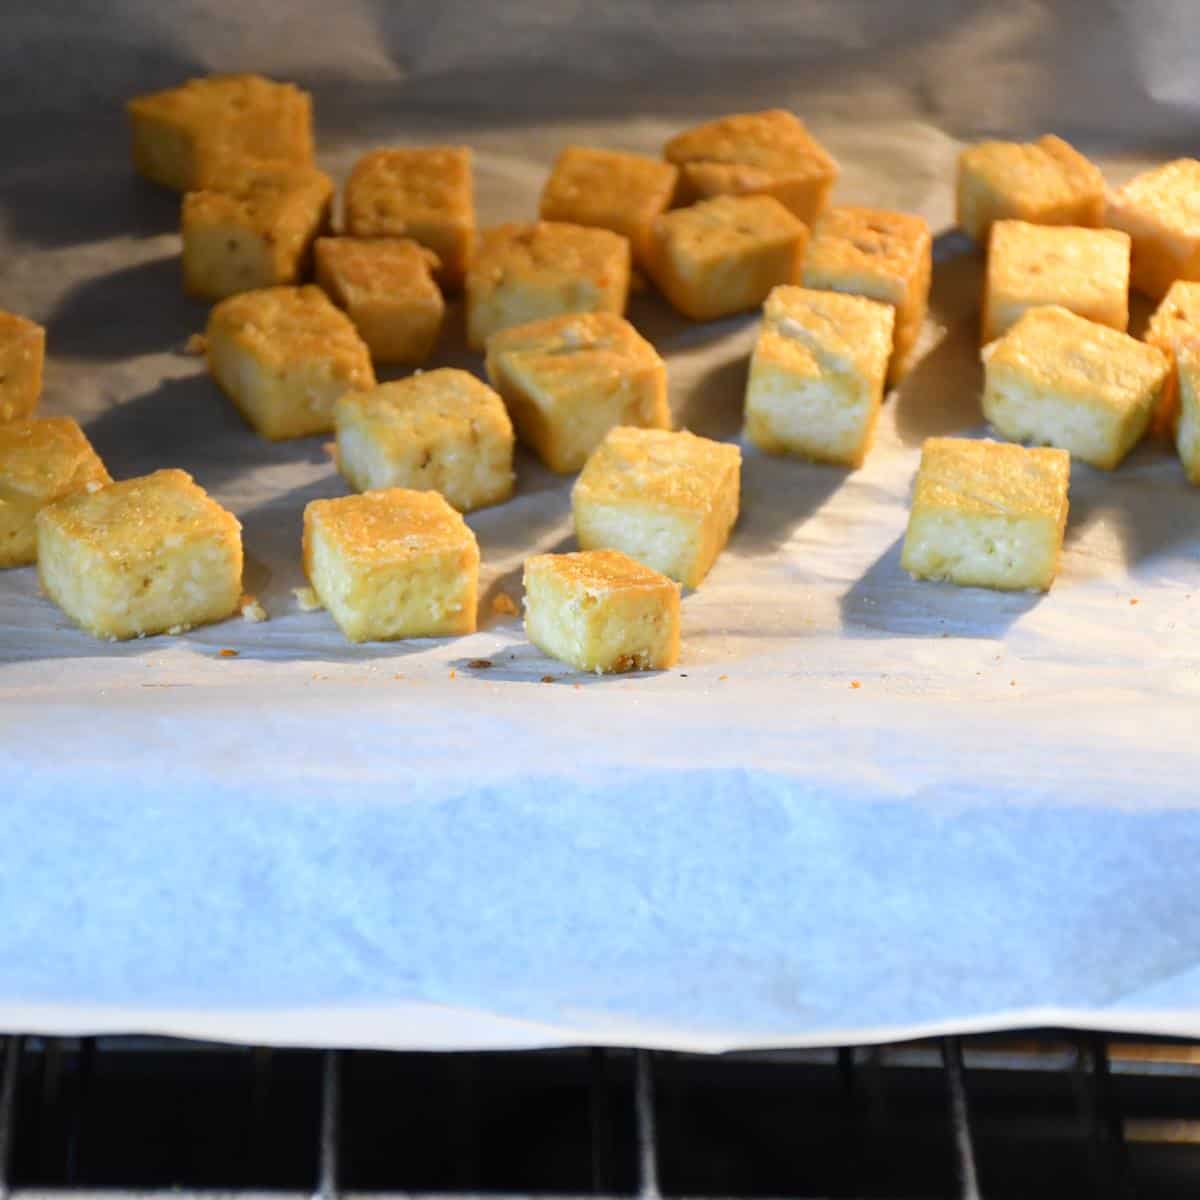 Des cubes de tofu dans le four.